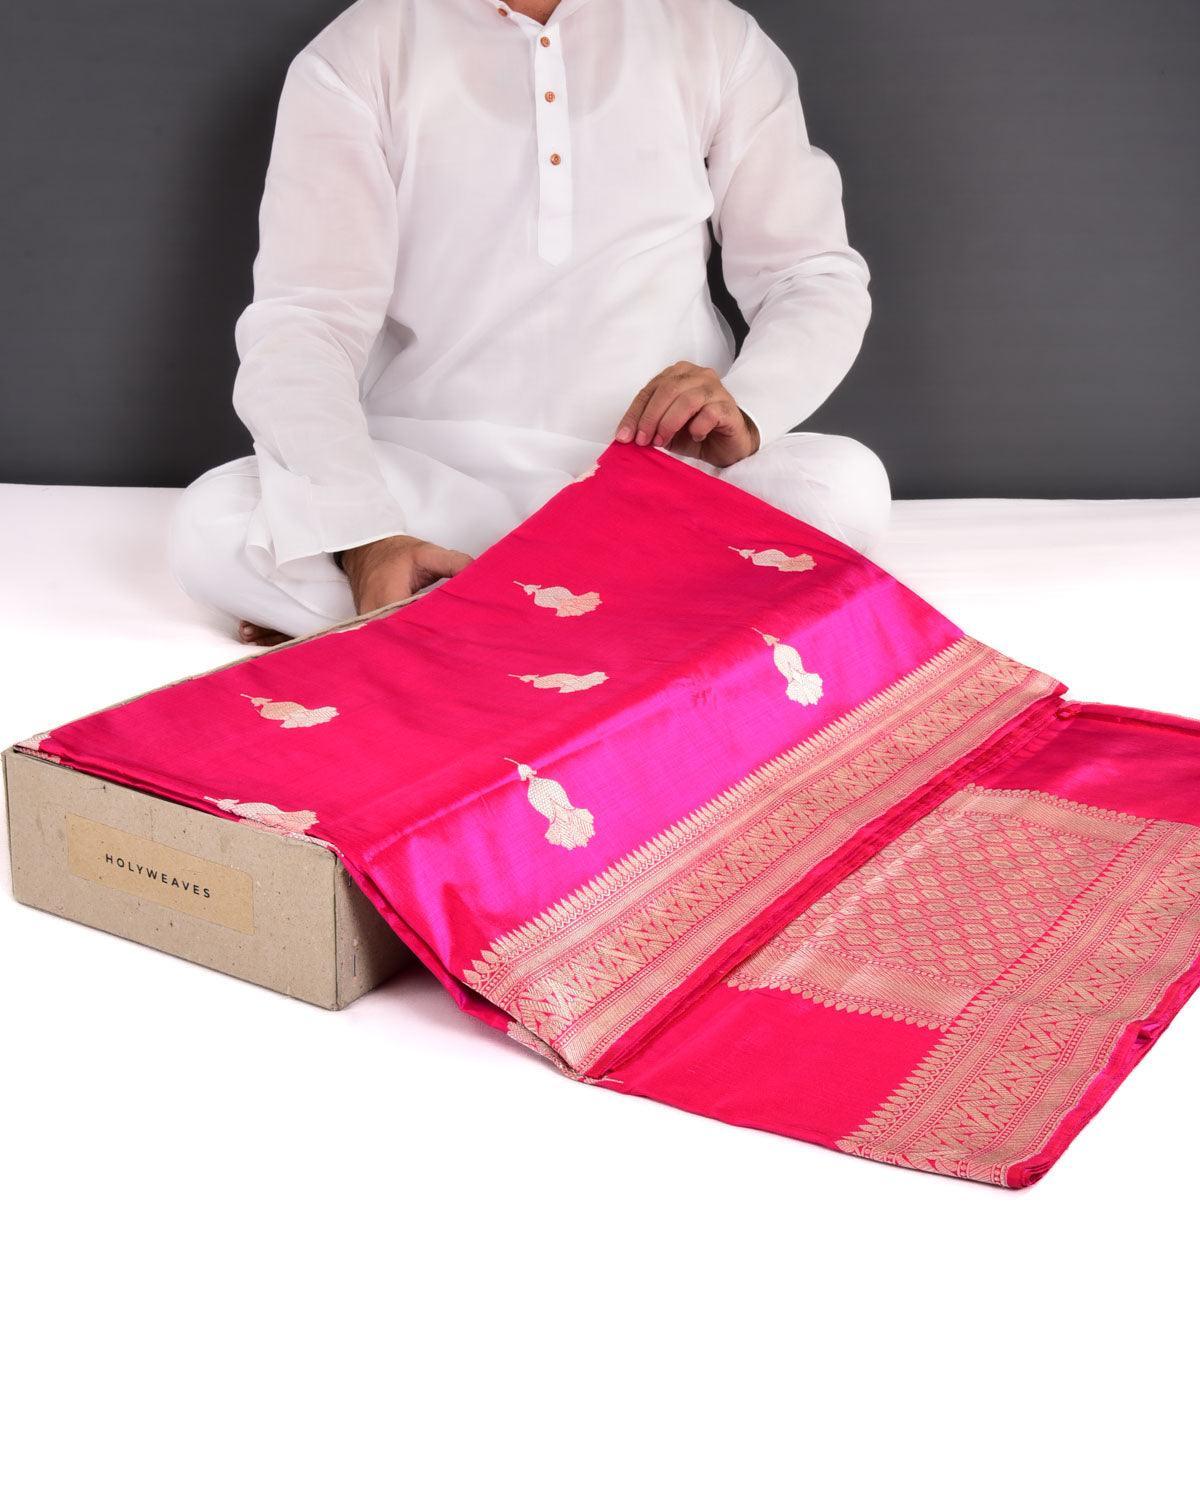 Shot Rani Pink Banarasi Alfi Sona Rupa Buta Kadhuan Brocade Handwoven Katan Silk Saree - By HolyWeaves, Benares